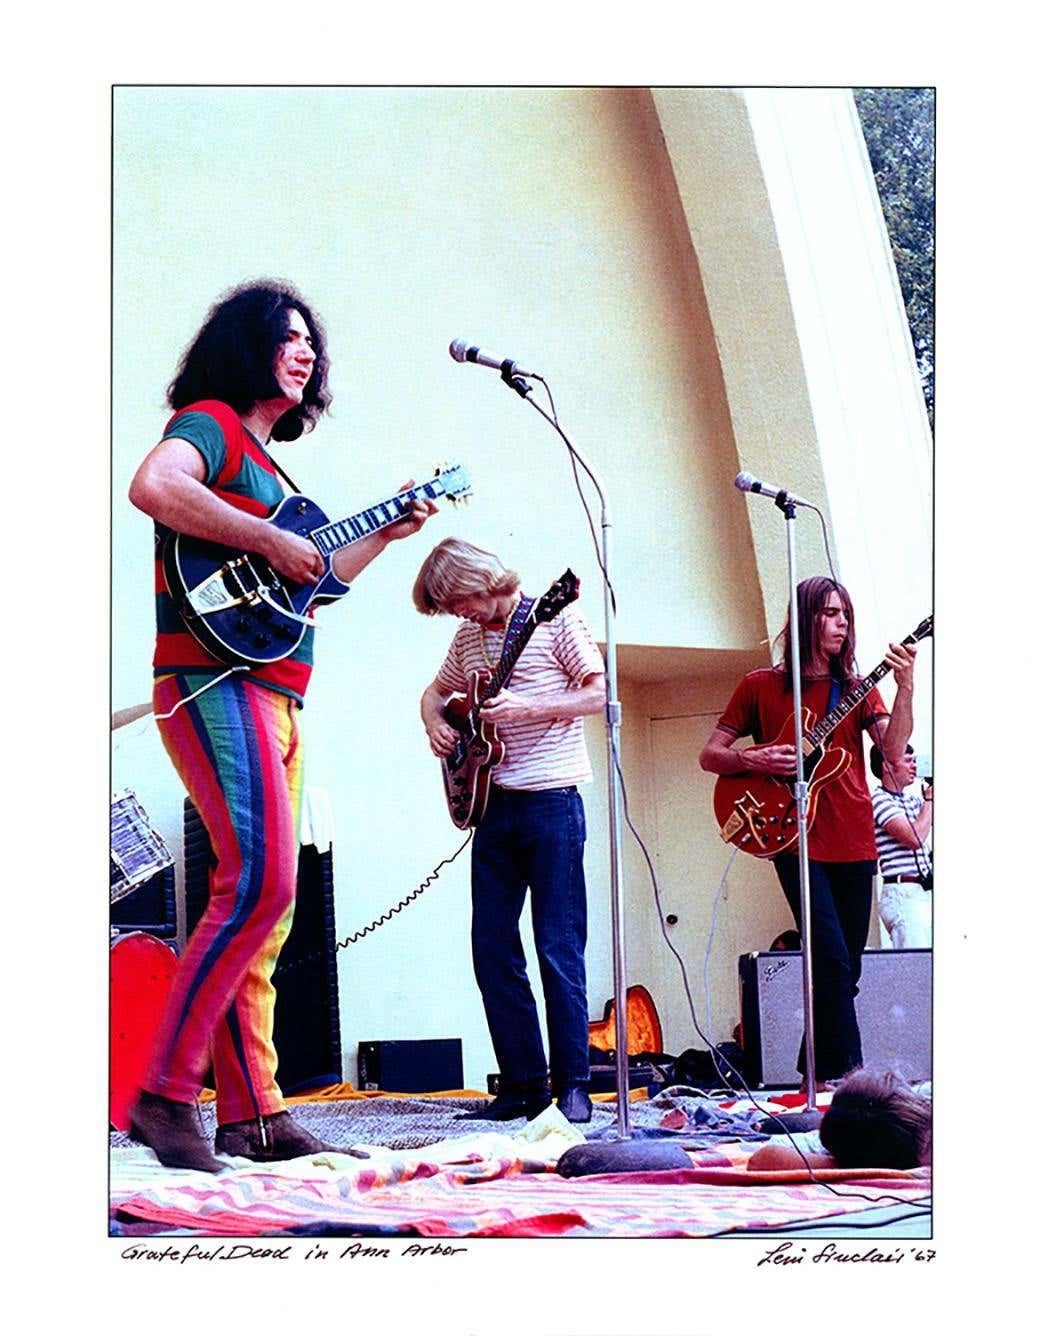 Grateful Dead-Fotografie von Ann Arbor, Michigan 1968 von Jerry Garcia (Pop-Art), Photograph, von Leni Sinclair